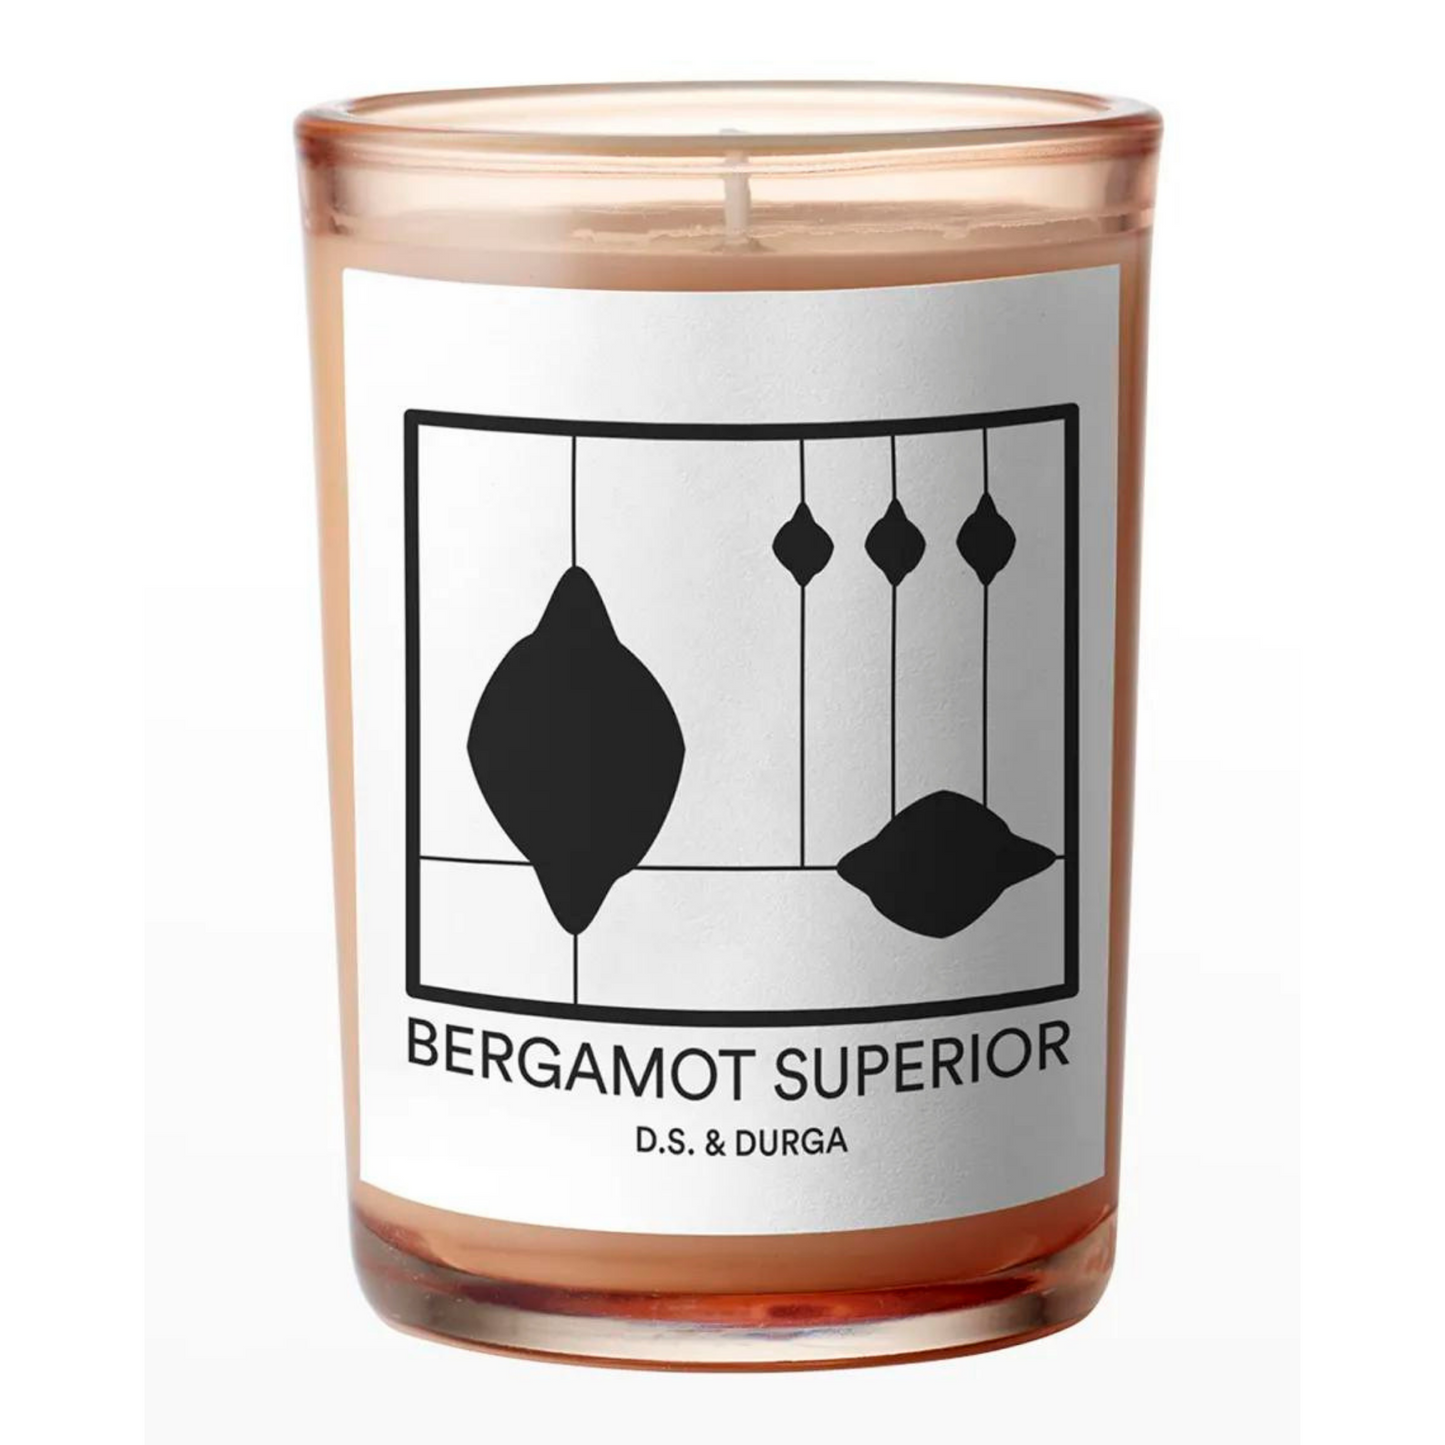 Primary Image of Candle - Bergamot Superior (7 oz)